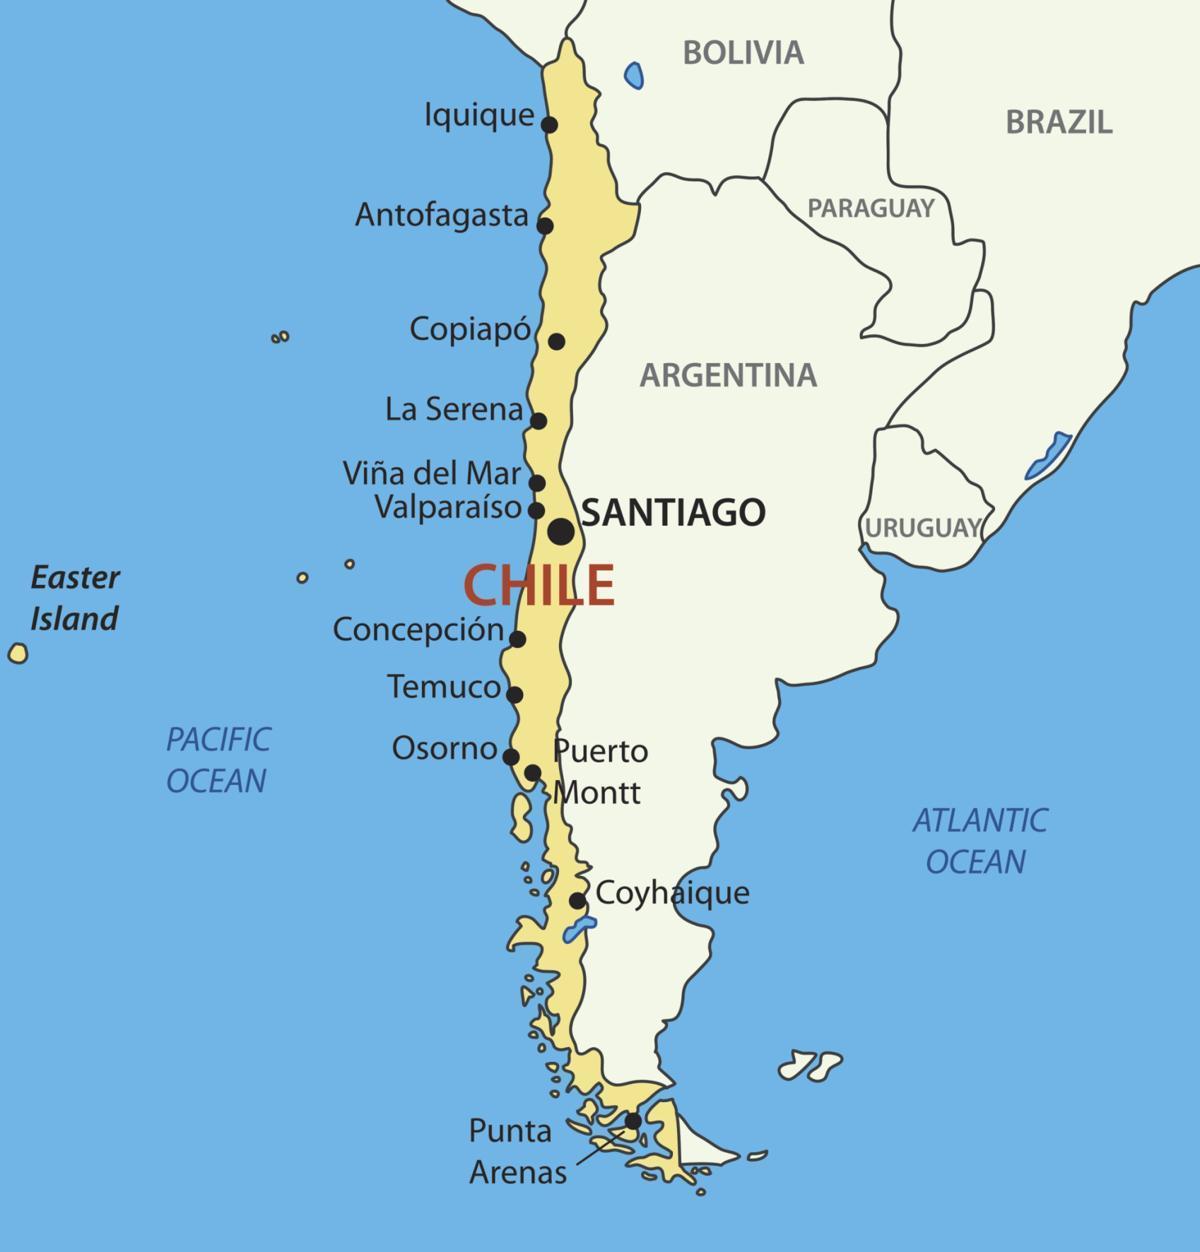 Harta e Kili vendit